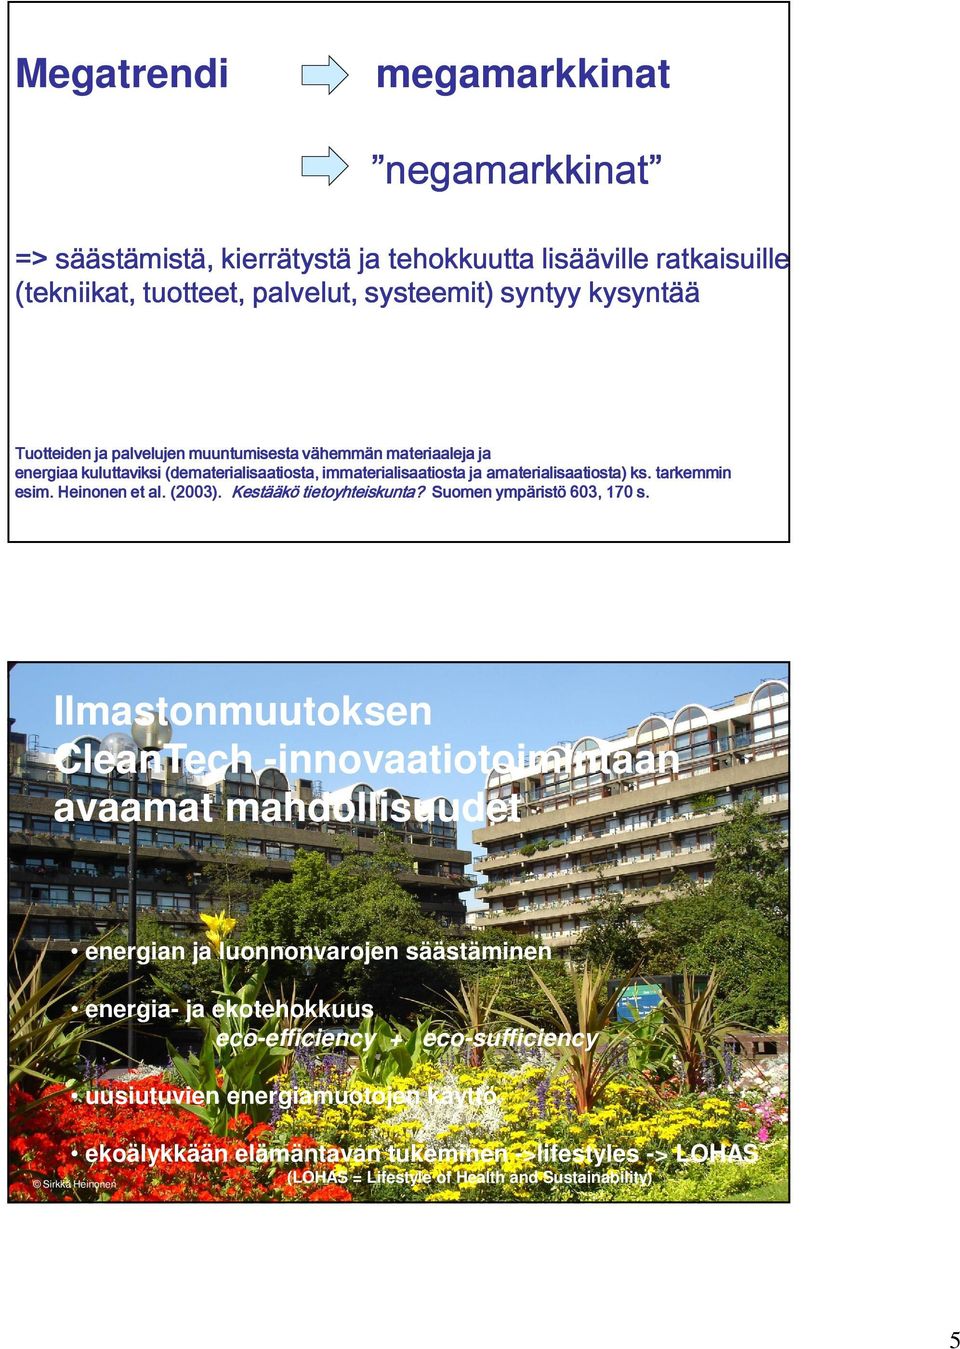 amaterialisaatiosta) ks. tarkemmin esim. Heinonen et al. (2003). Kestääkö tietoyhteiskunta? Suomen ympäristö 603, 170 s.